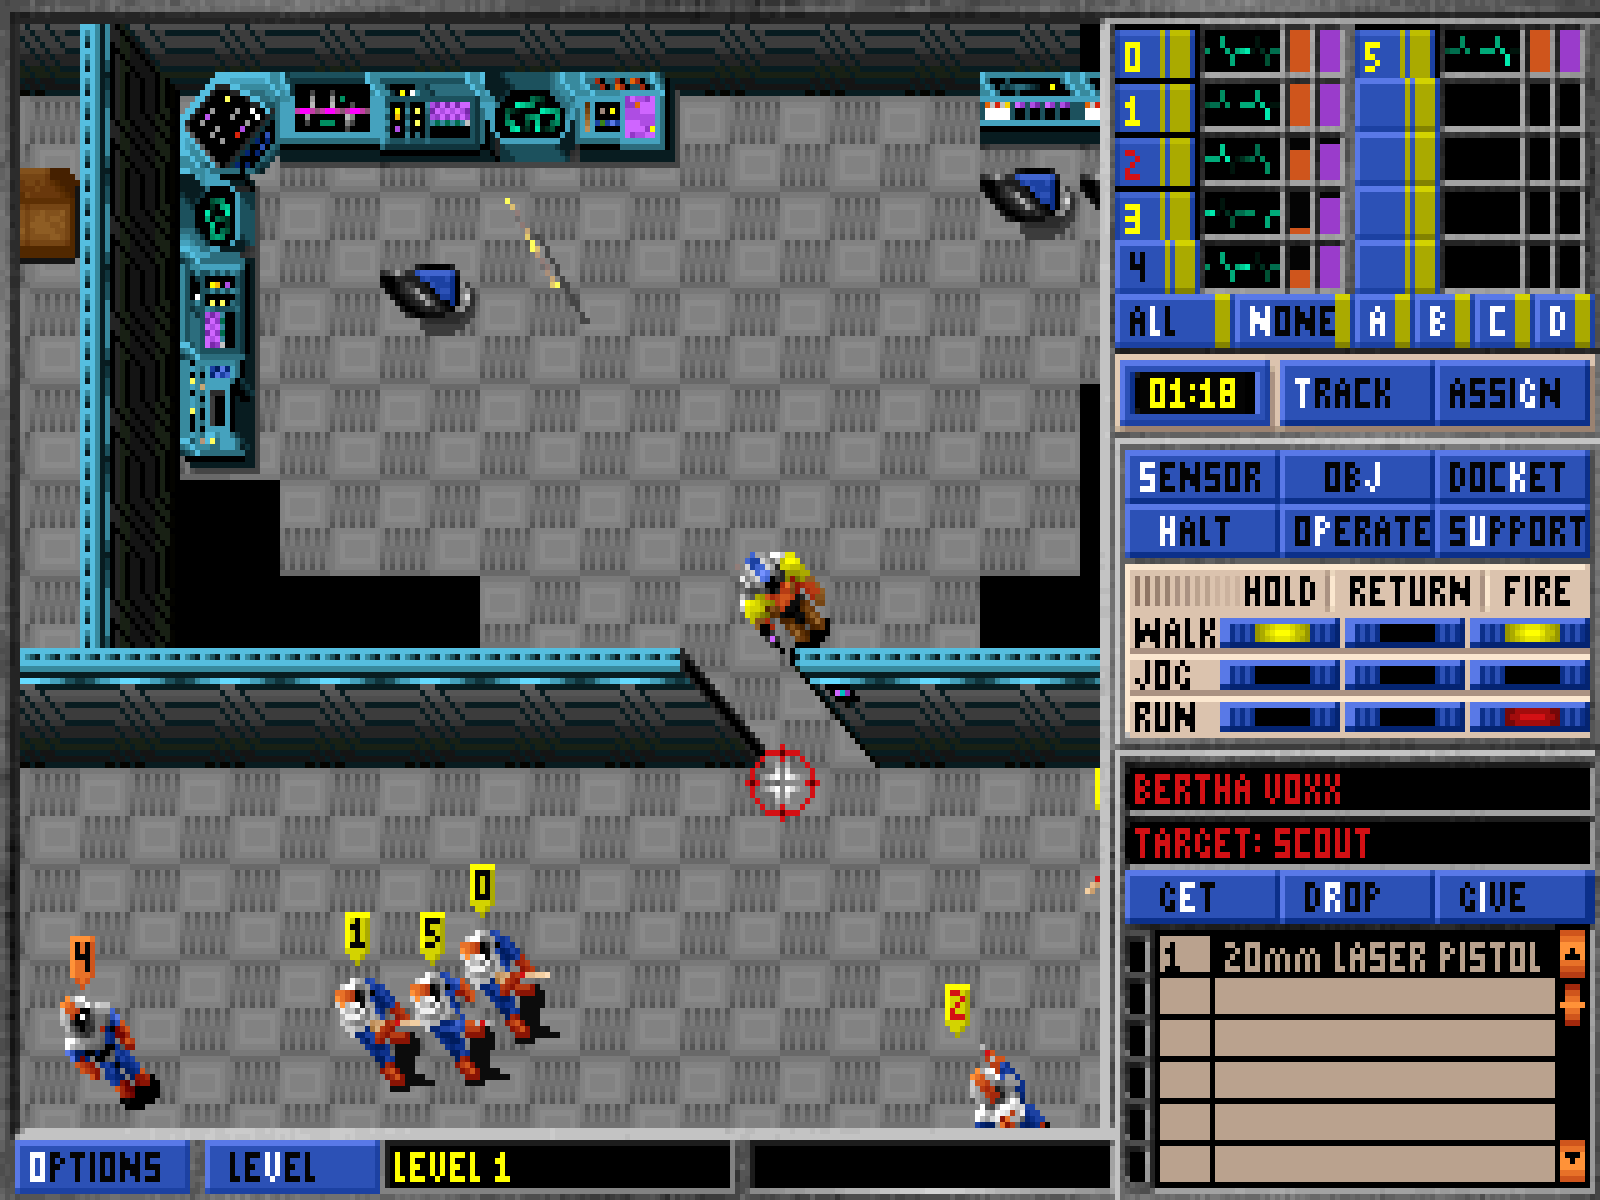 Игры для PC 1995. MS dos игры. Dos game 1995. Программа на ПК 1995.